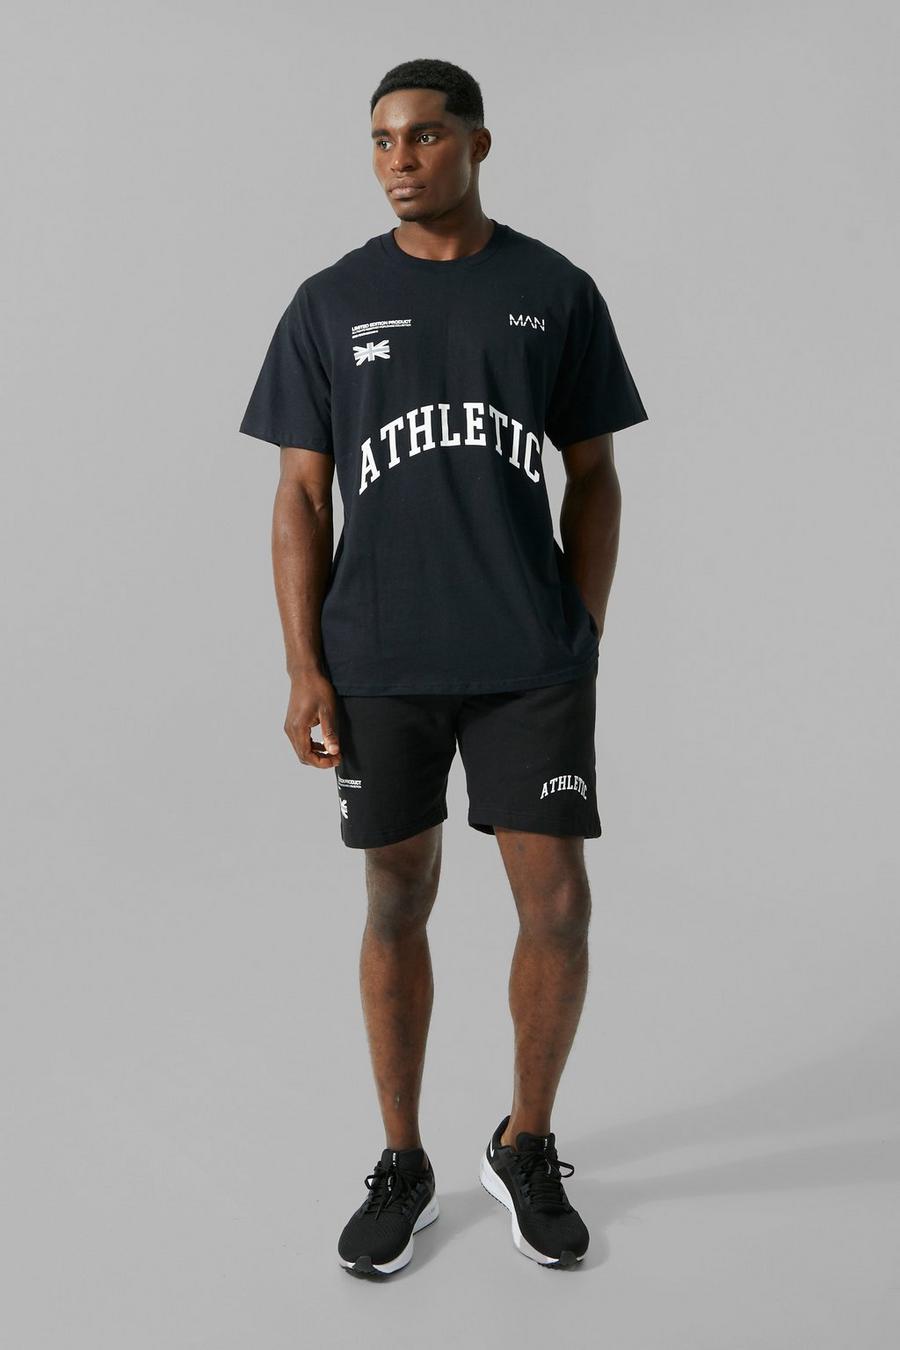 שחור negro סט שורט ספורטיבי אוברסייז עם כיתוב Athletic, מסדרת Man Active